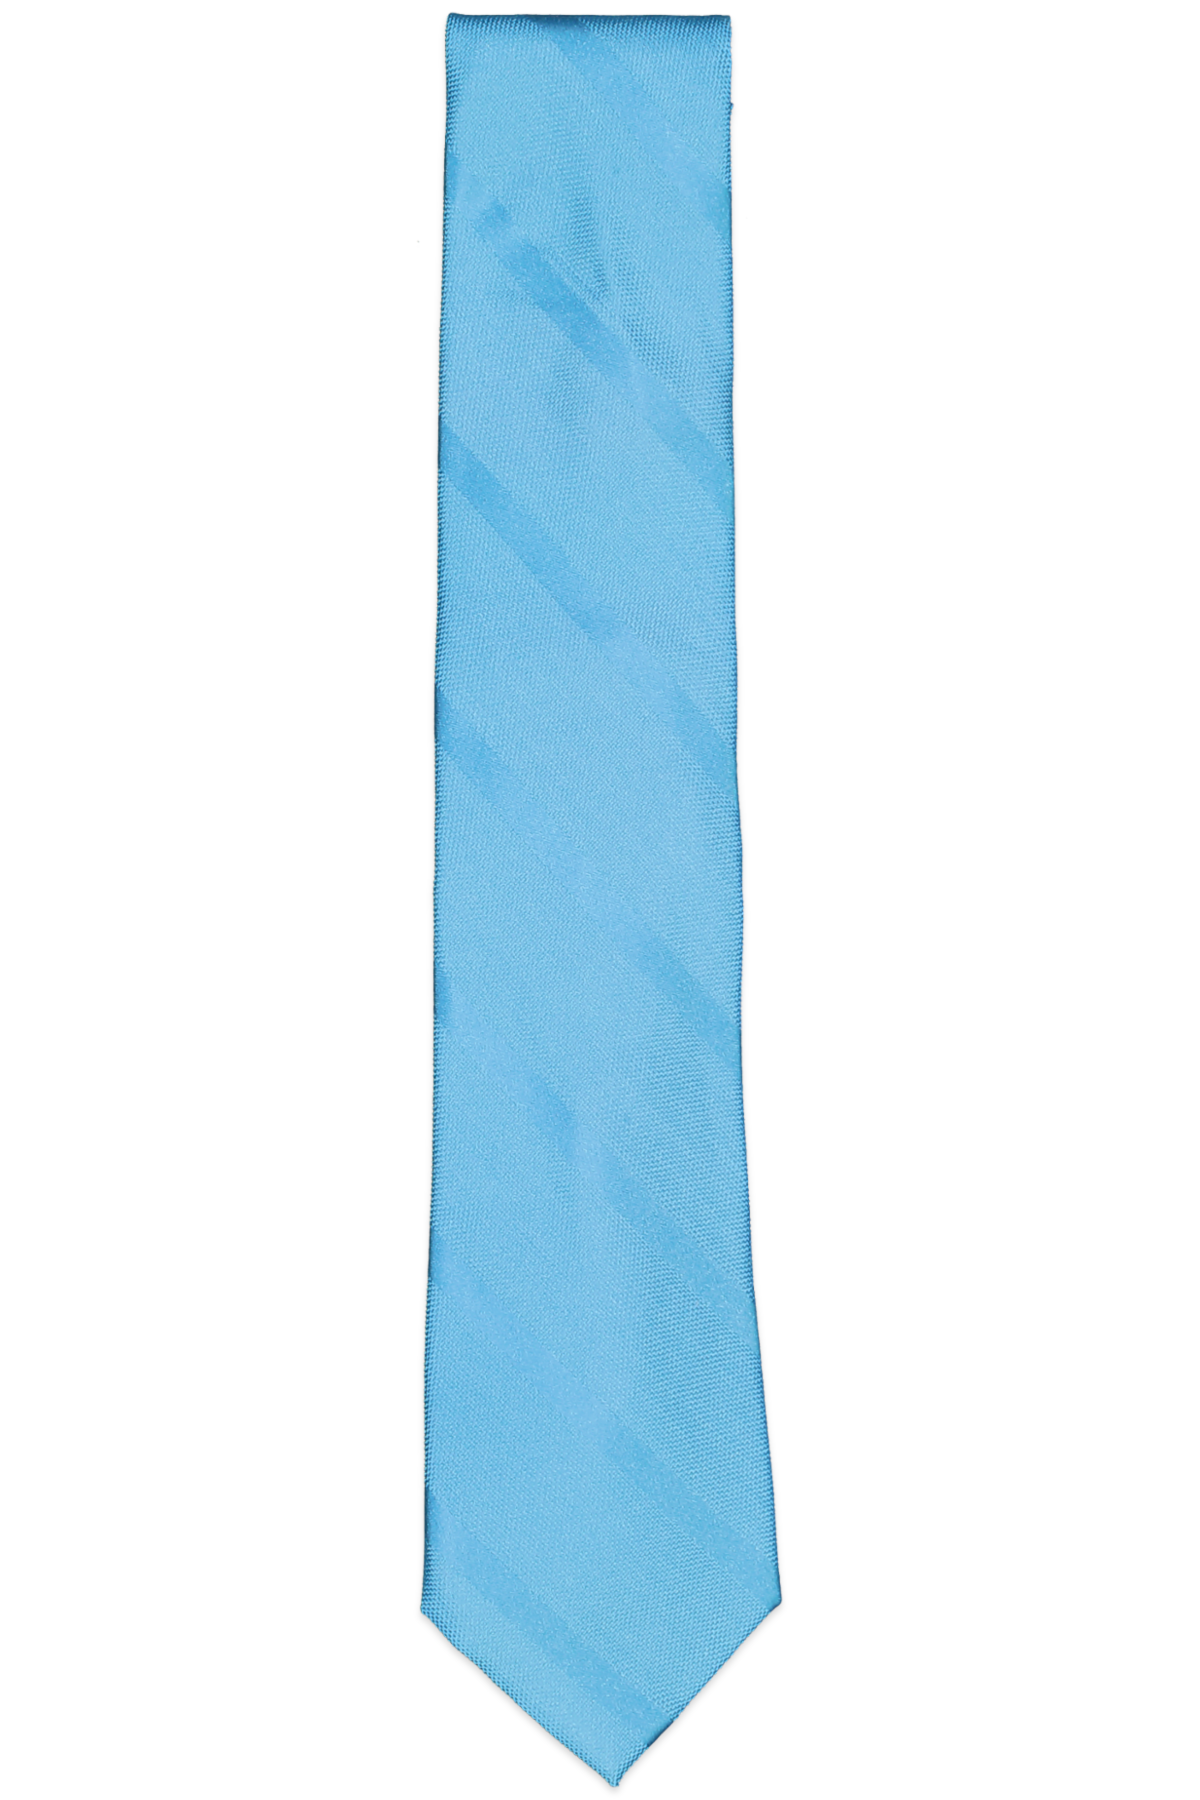 Tommy Hilfiger Textured Stripe Silk Tie Turq/aqua